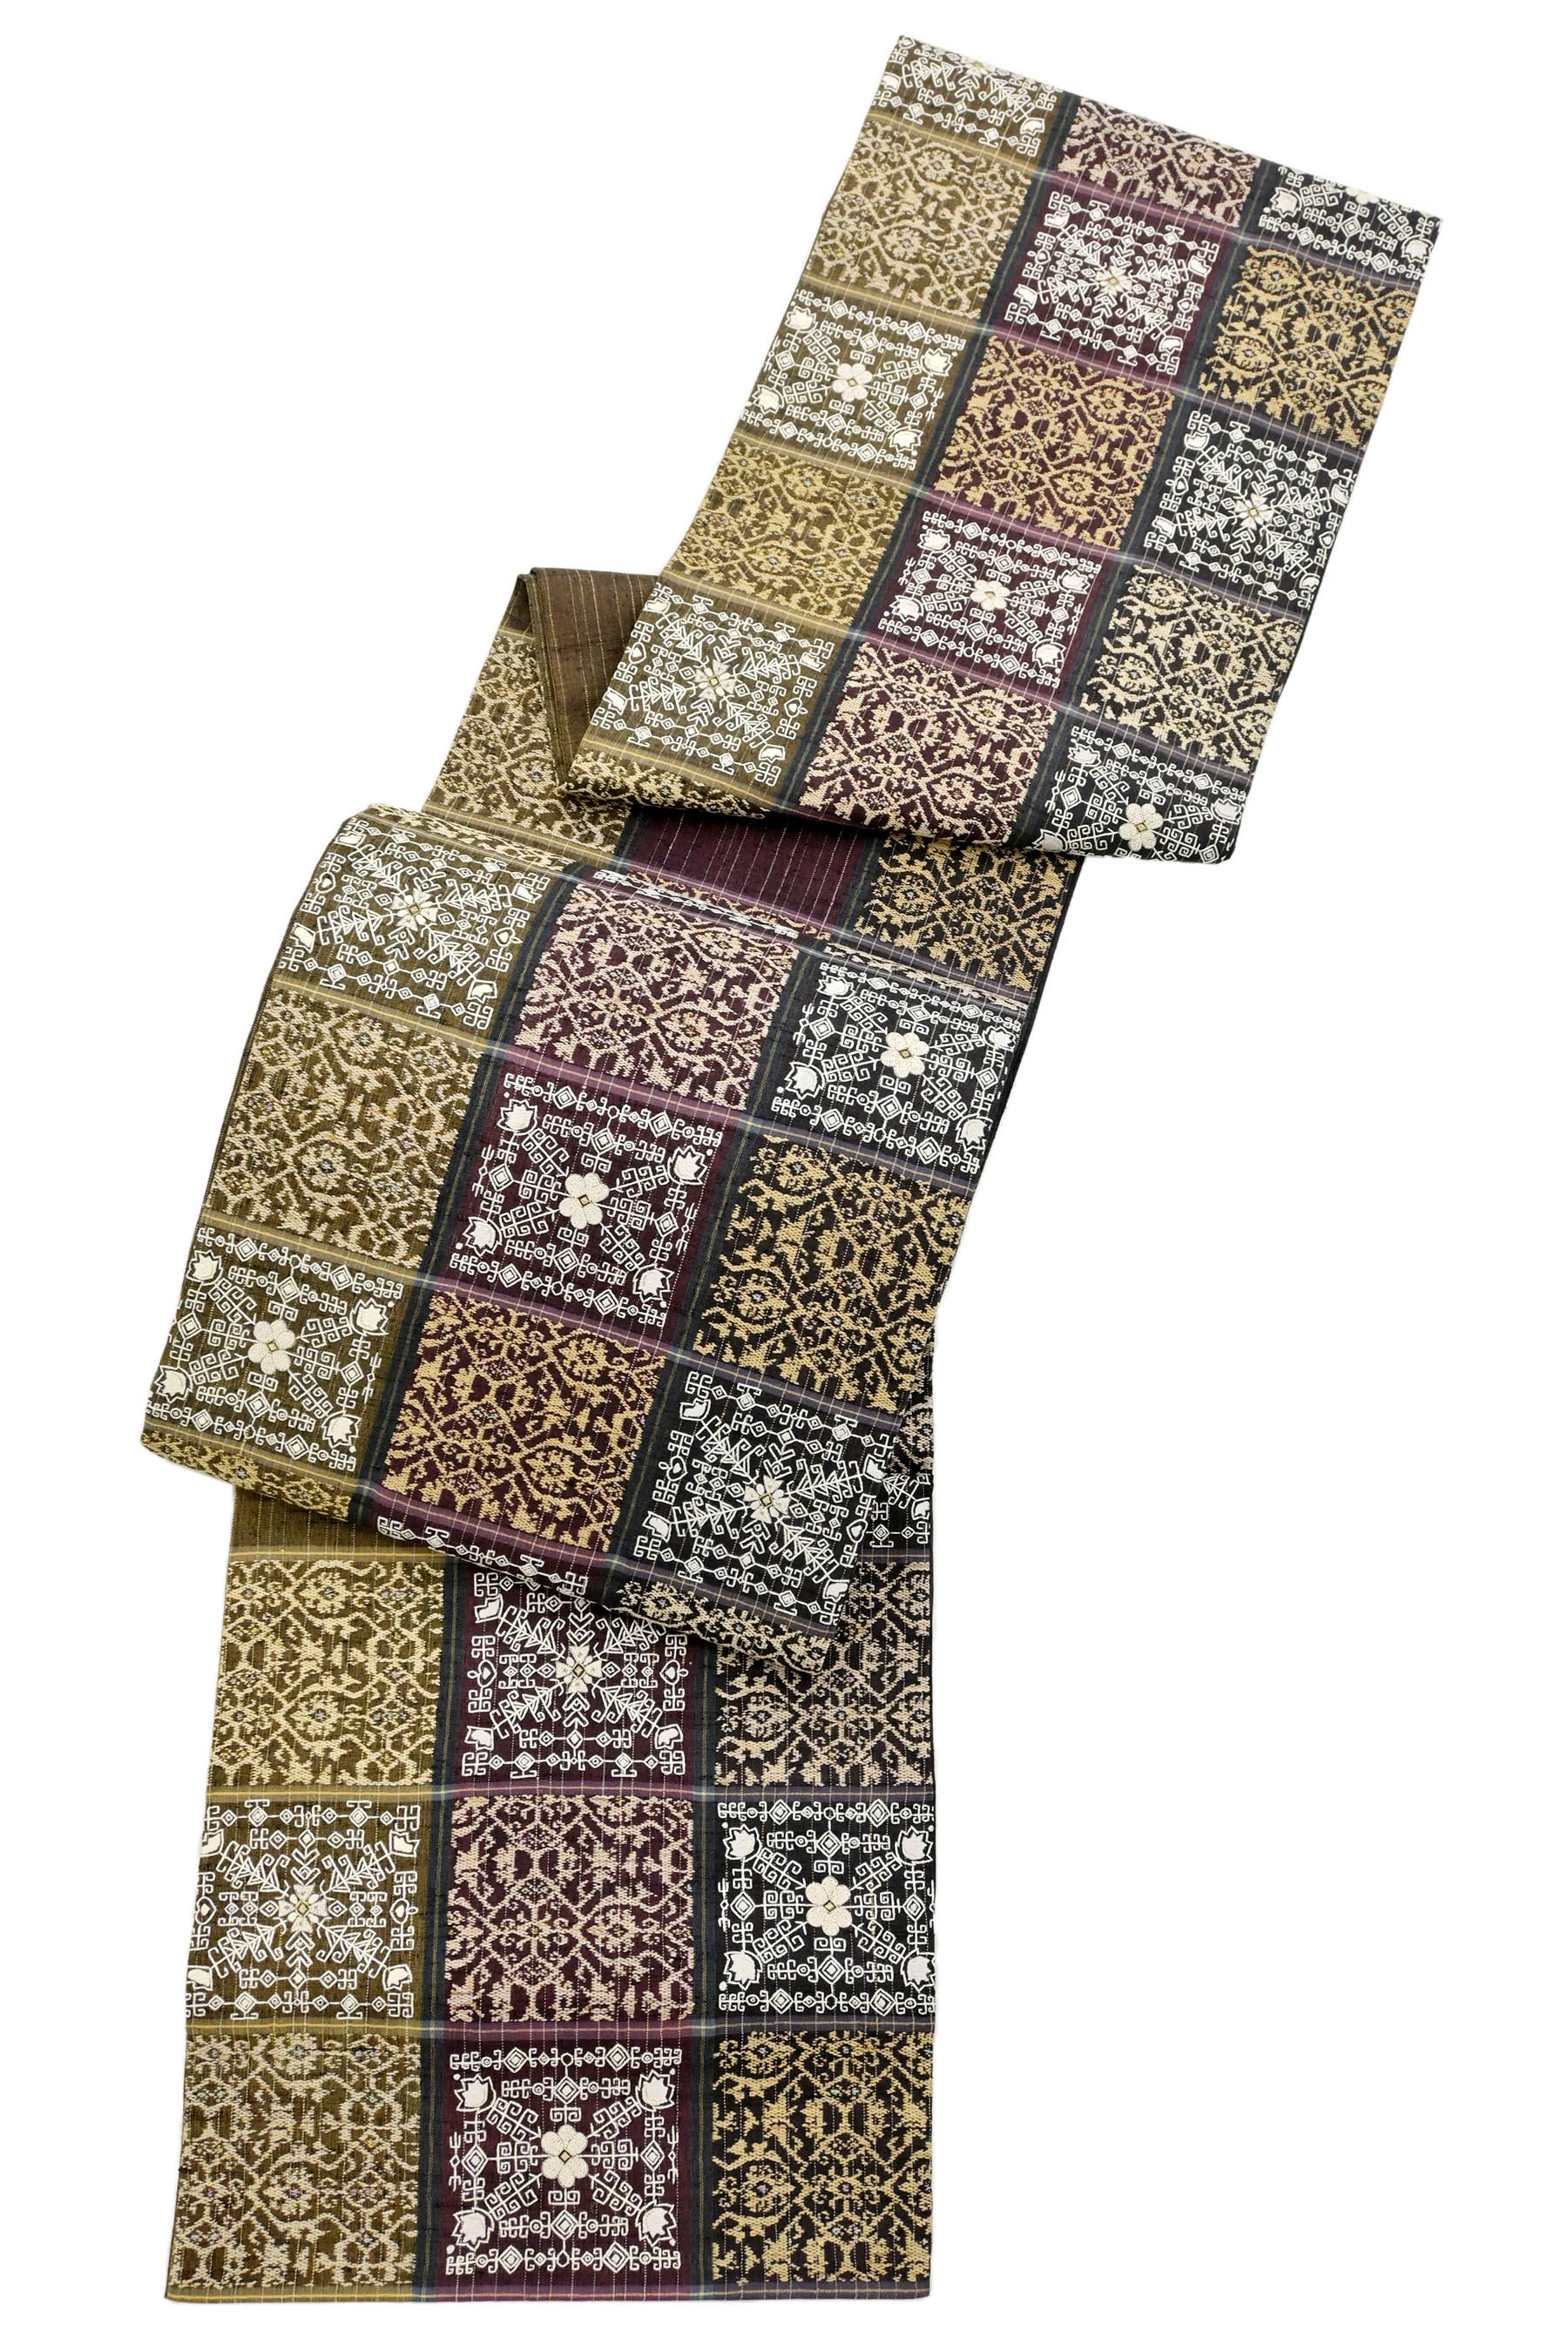 袋帯 相良刺繍 手織り紬 菱 波 24M34f 国内製造 - miyomcerrahisi.com